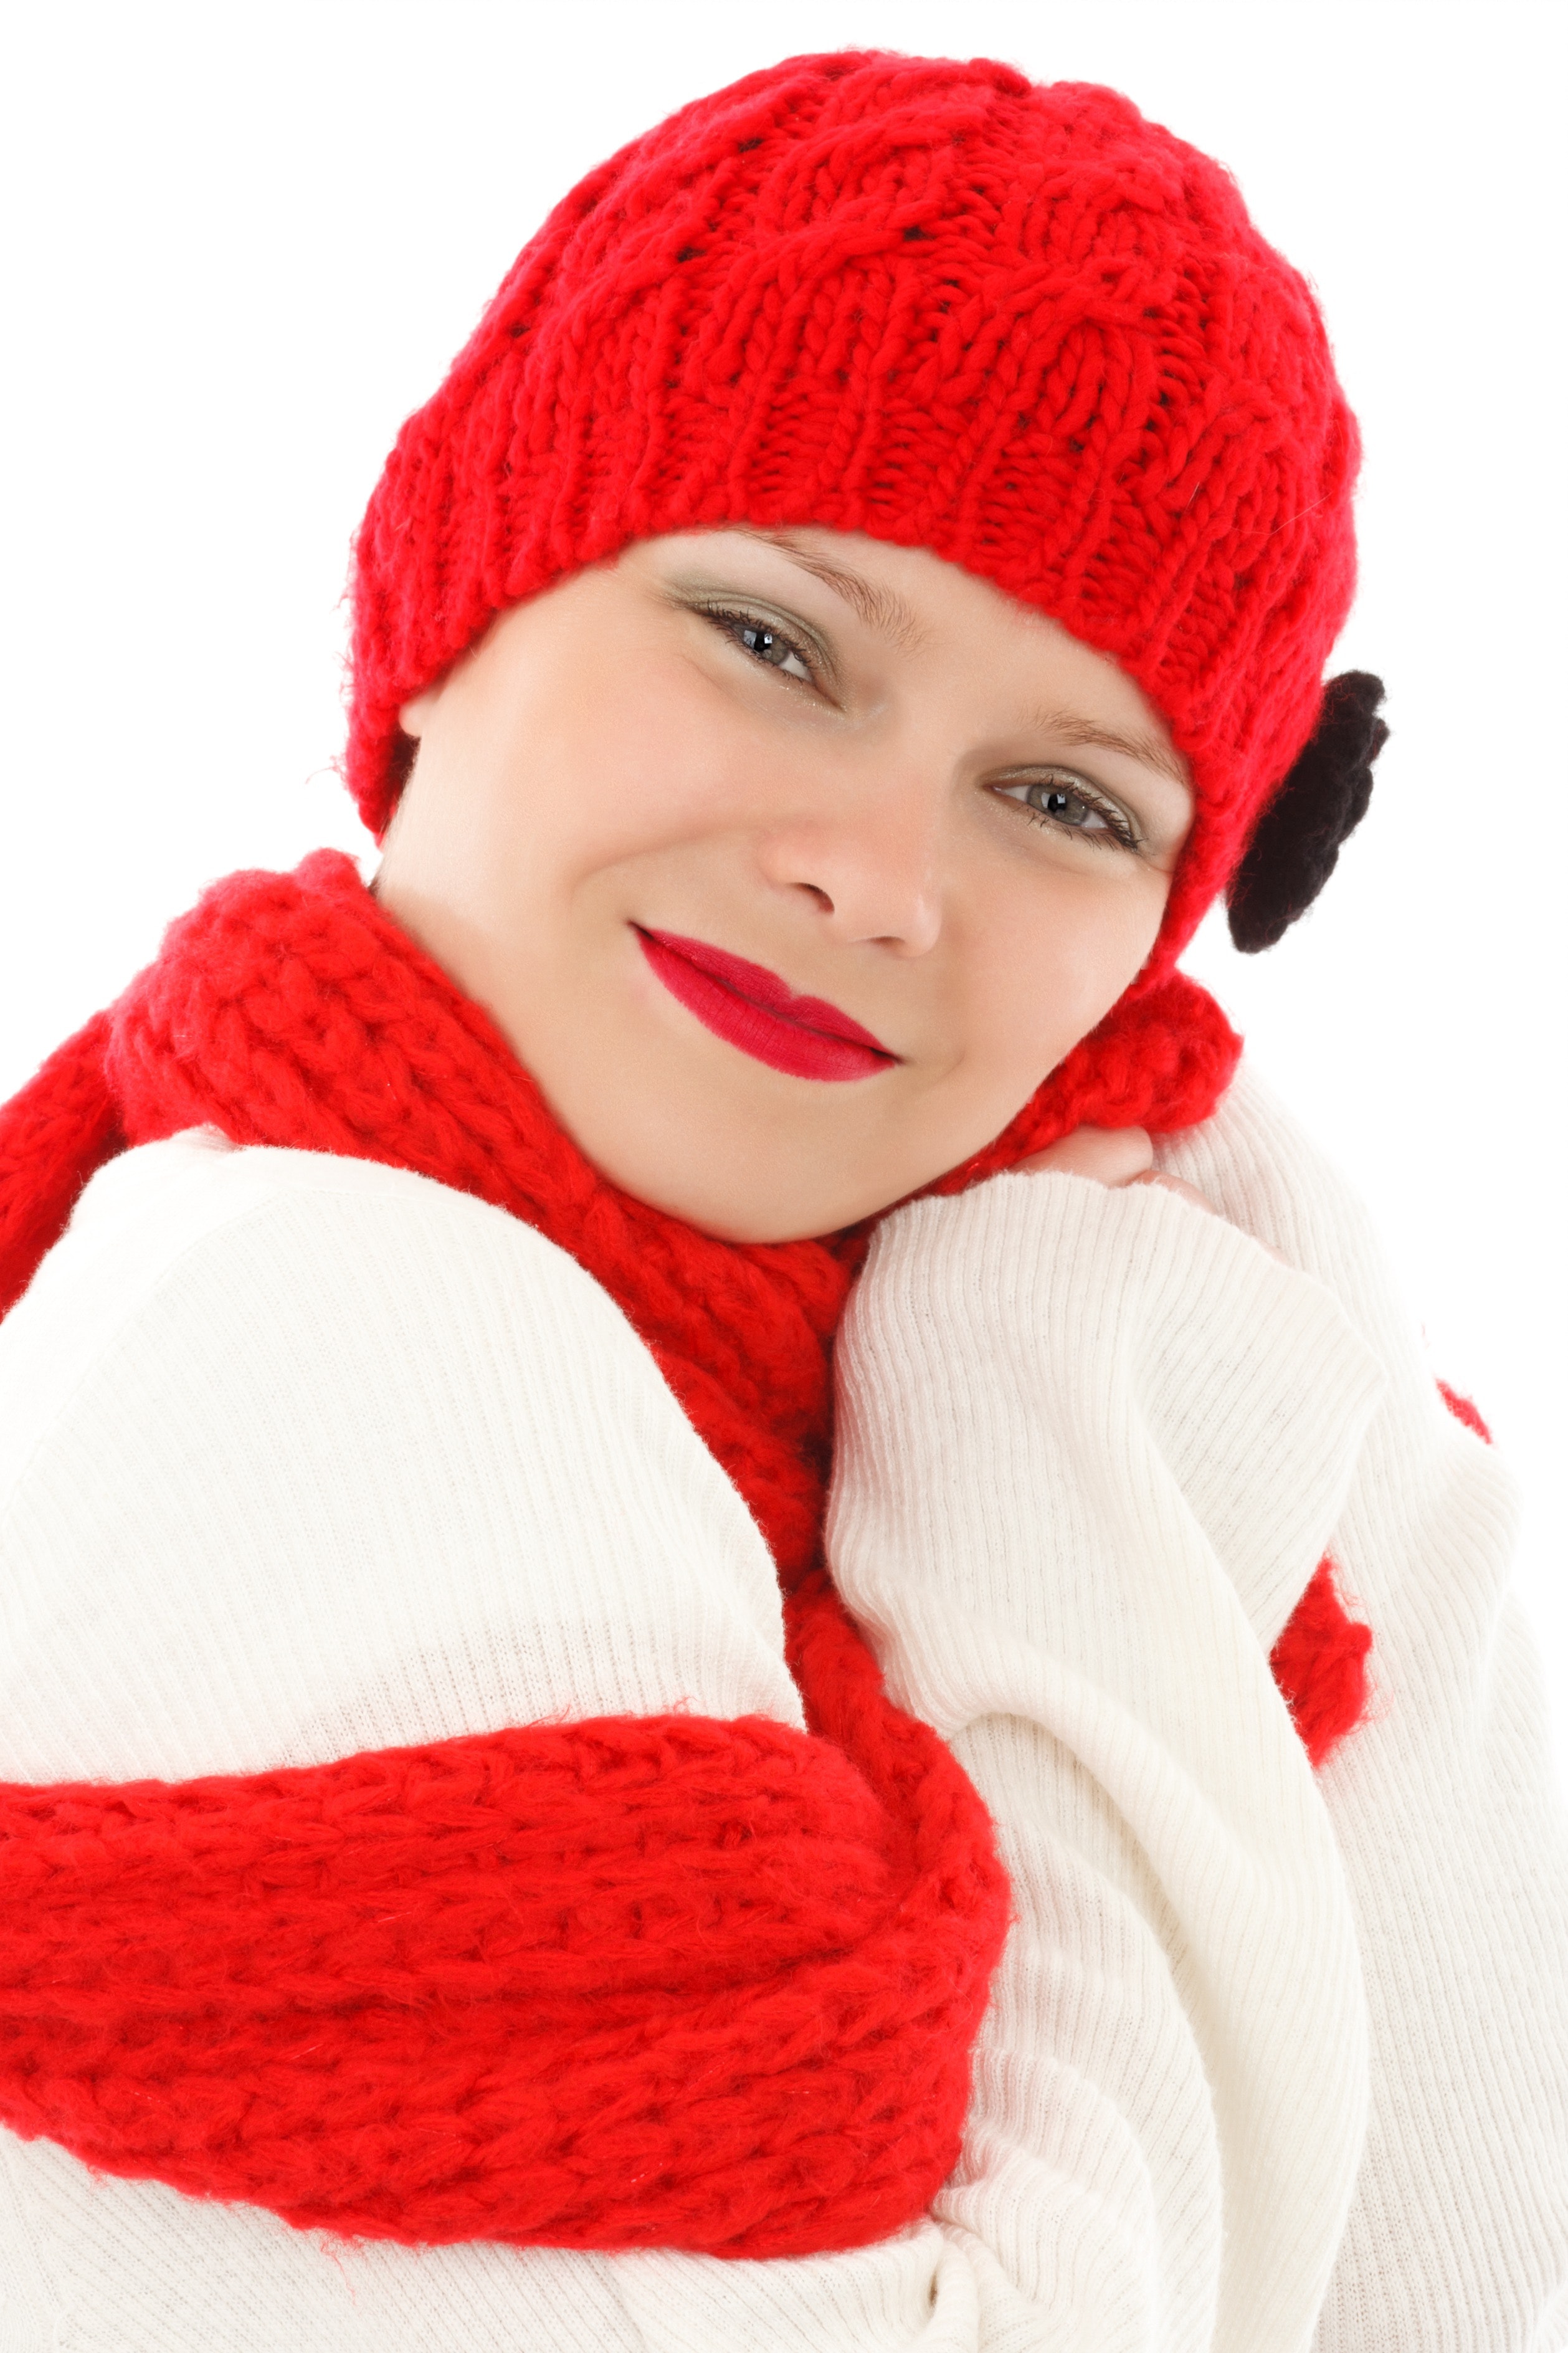 Свитер шапку и шарф. Шапка вязаная. Девушка в шапке зимой. Девушка в красной шапке. Красная зимняя шапка.